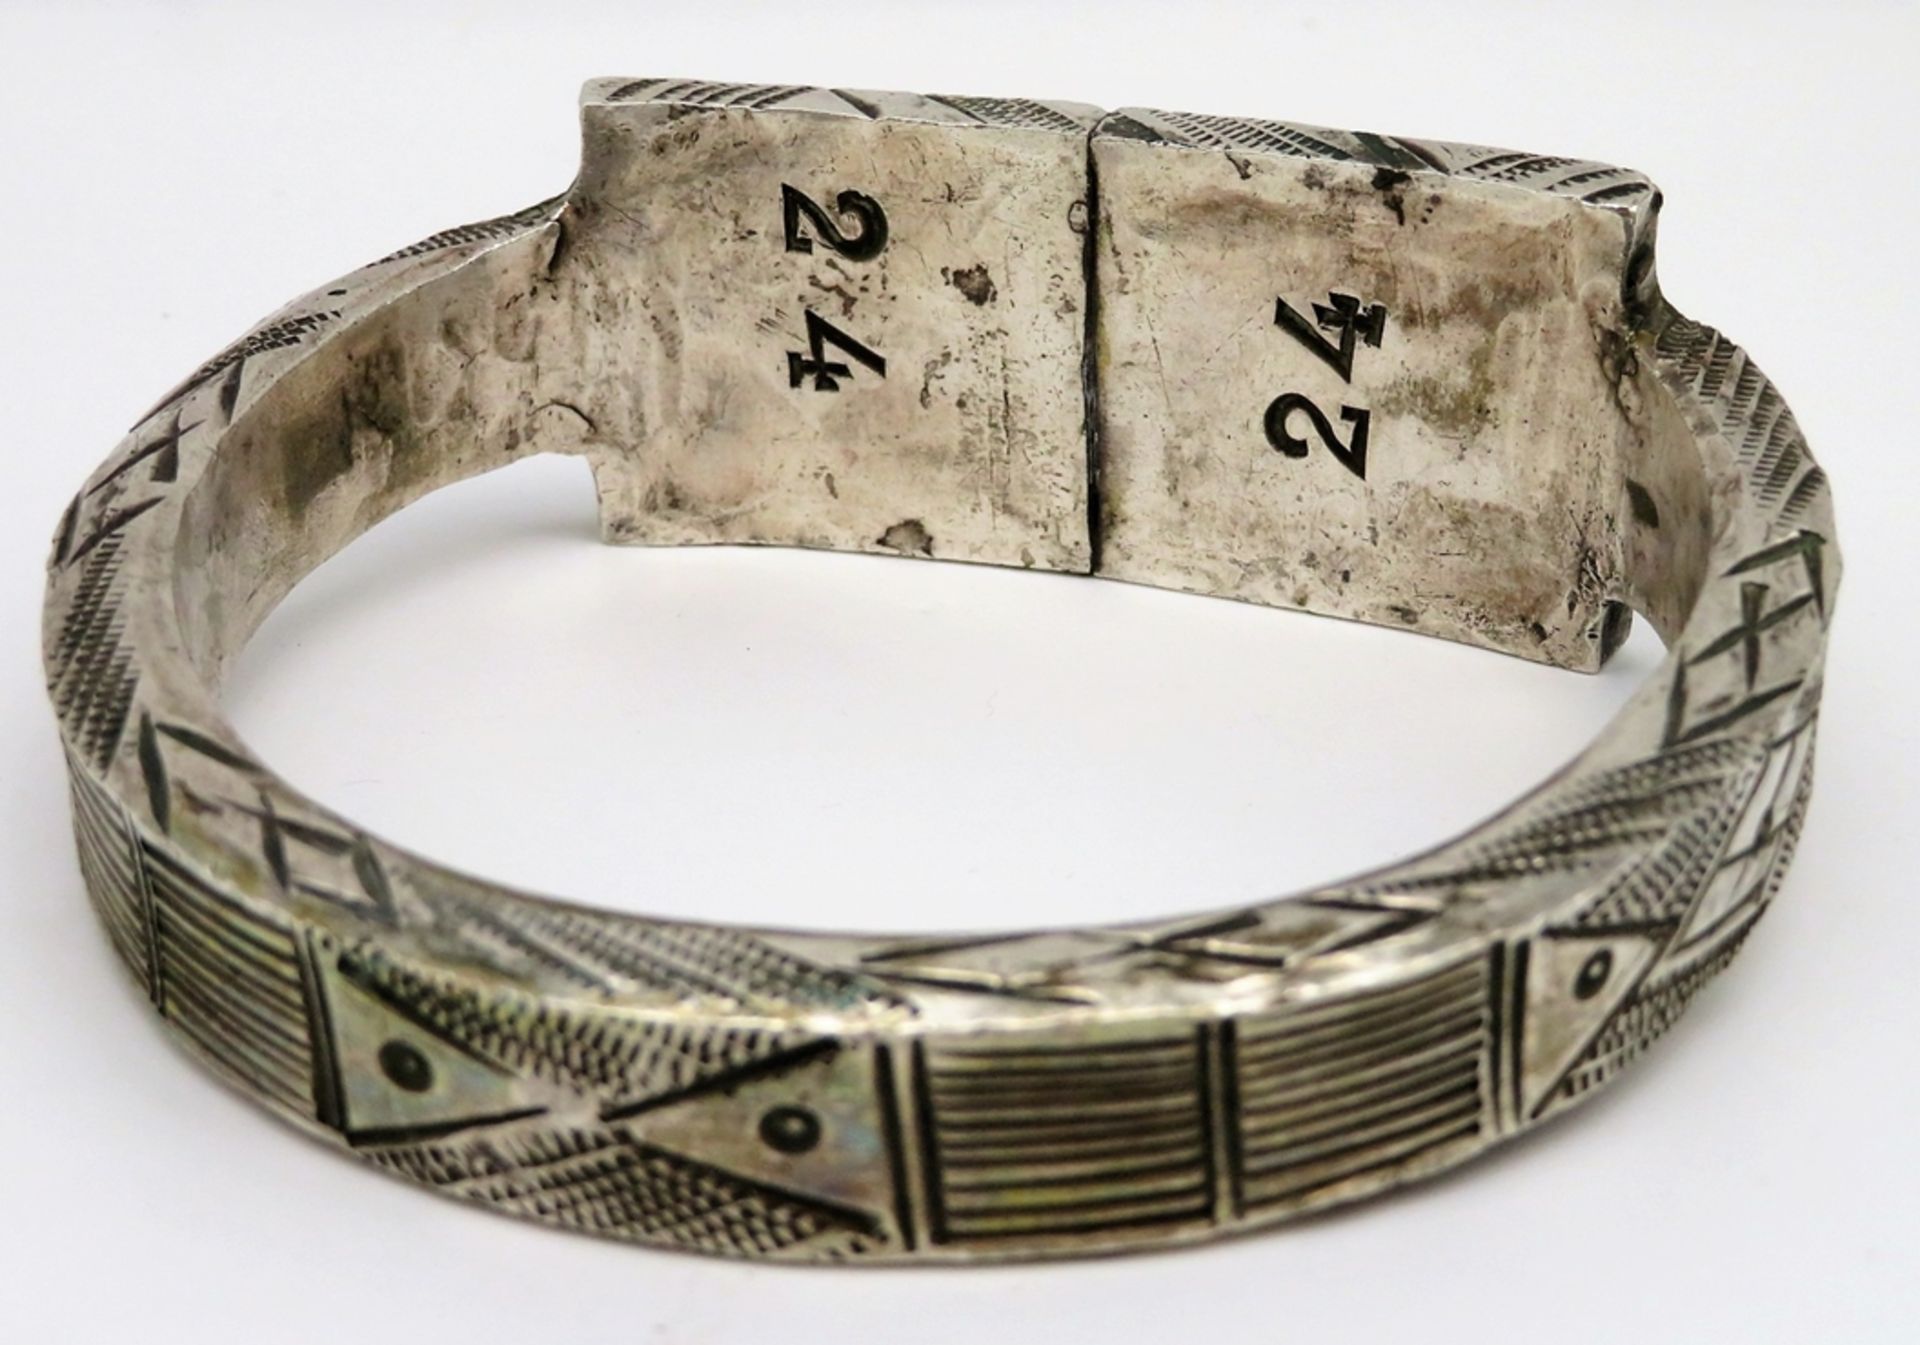 Fußreif, Orient, umlaufend mit reicher Gravur, Silber 800/000, geprüft, 370 g. - Image 2 of 2